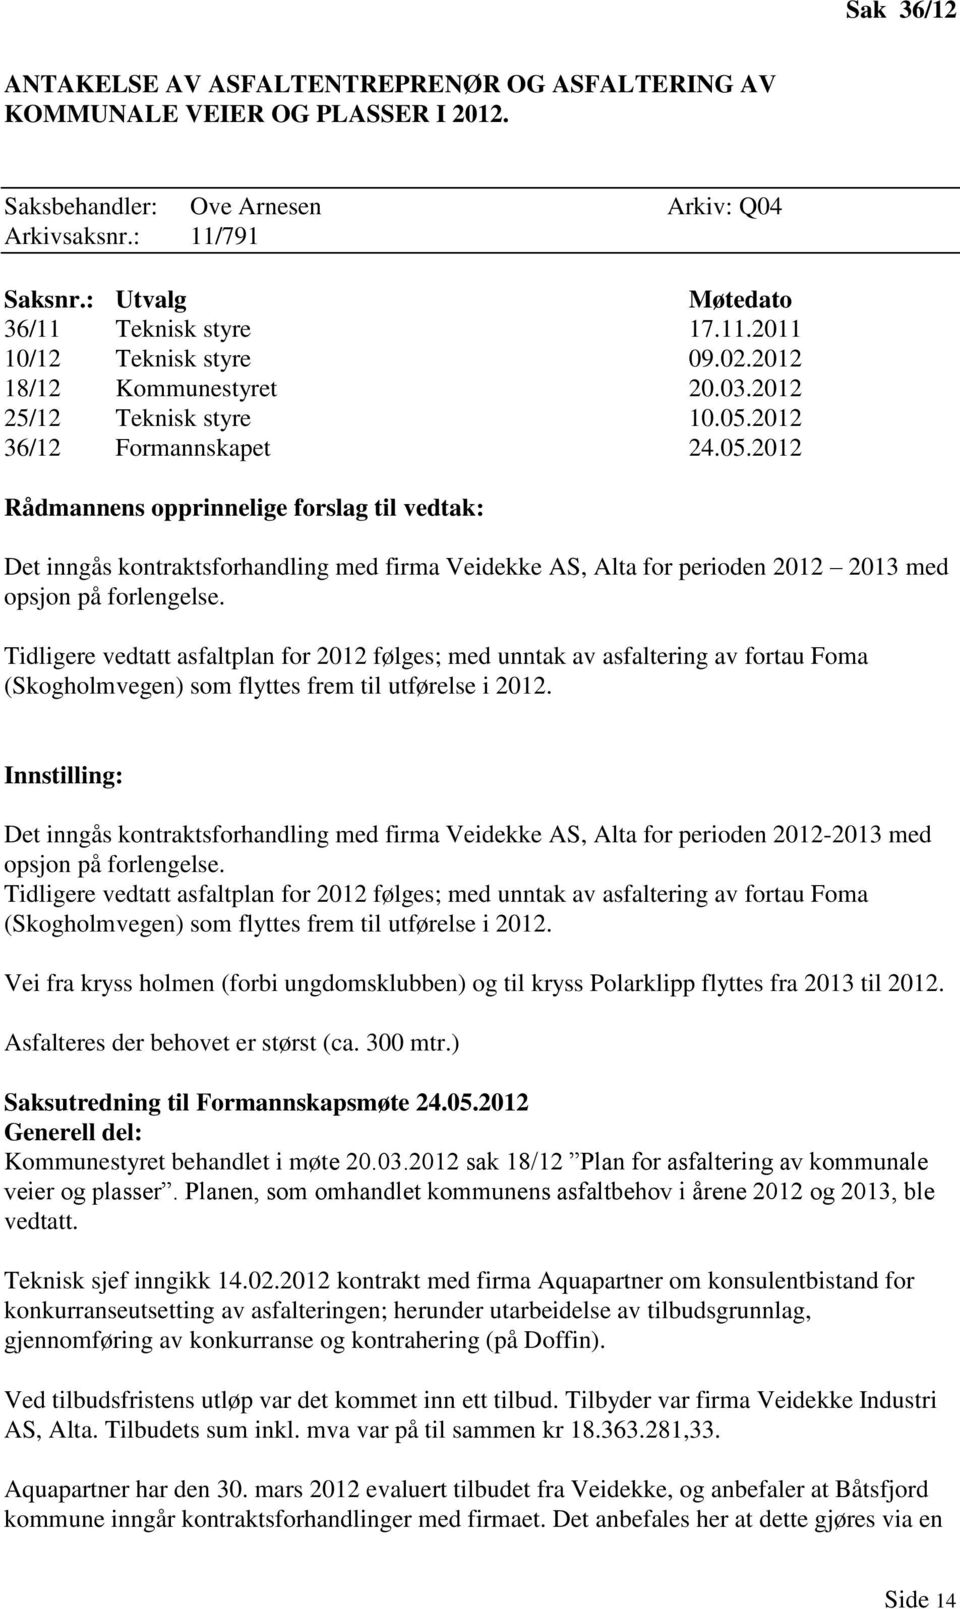 2012 36/12 Formannskapet 24.05.2012 Rådmannens opprinnelige forslag til vedtak: Det inngås kontraktsforhandling med firma Veidekke AS, Alta for perioden 2012 2013 med opsjon på forlengelse.